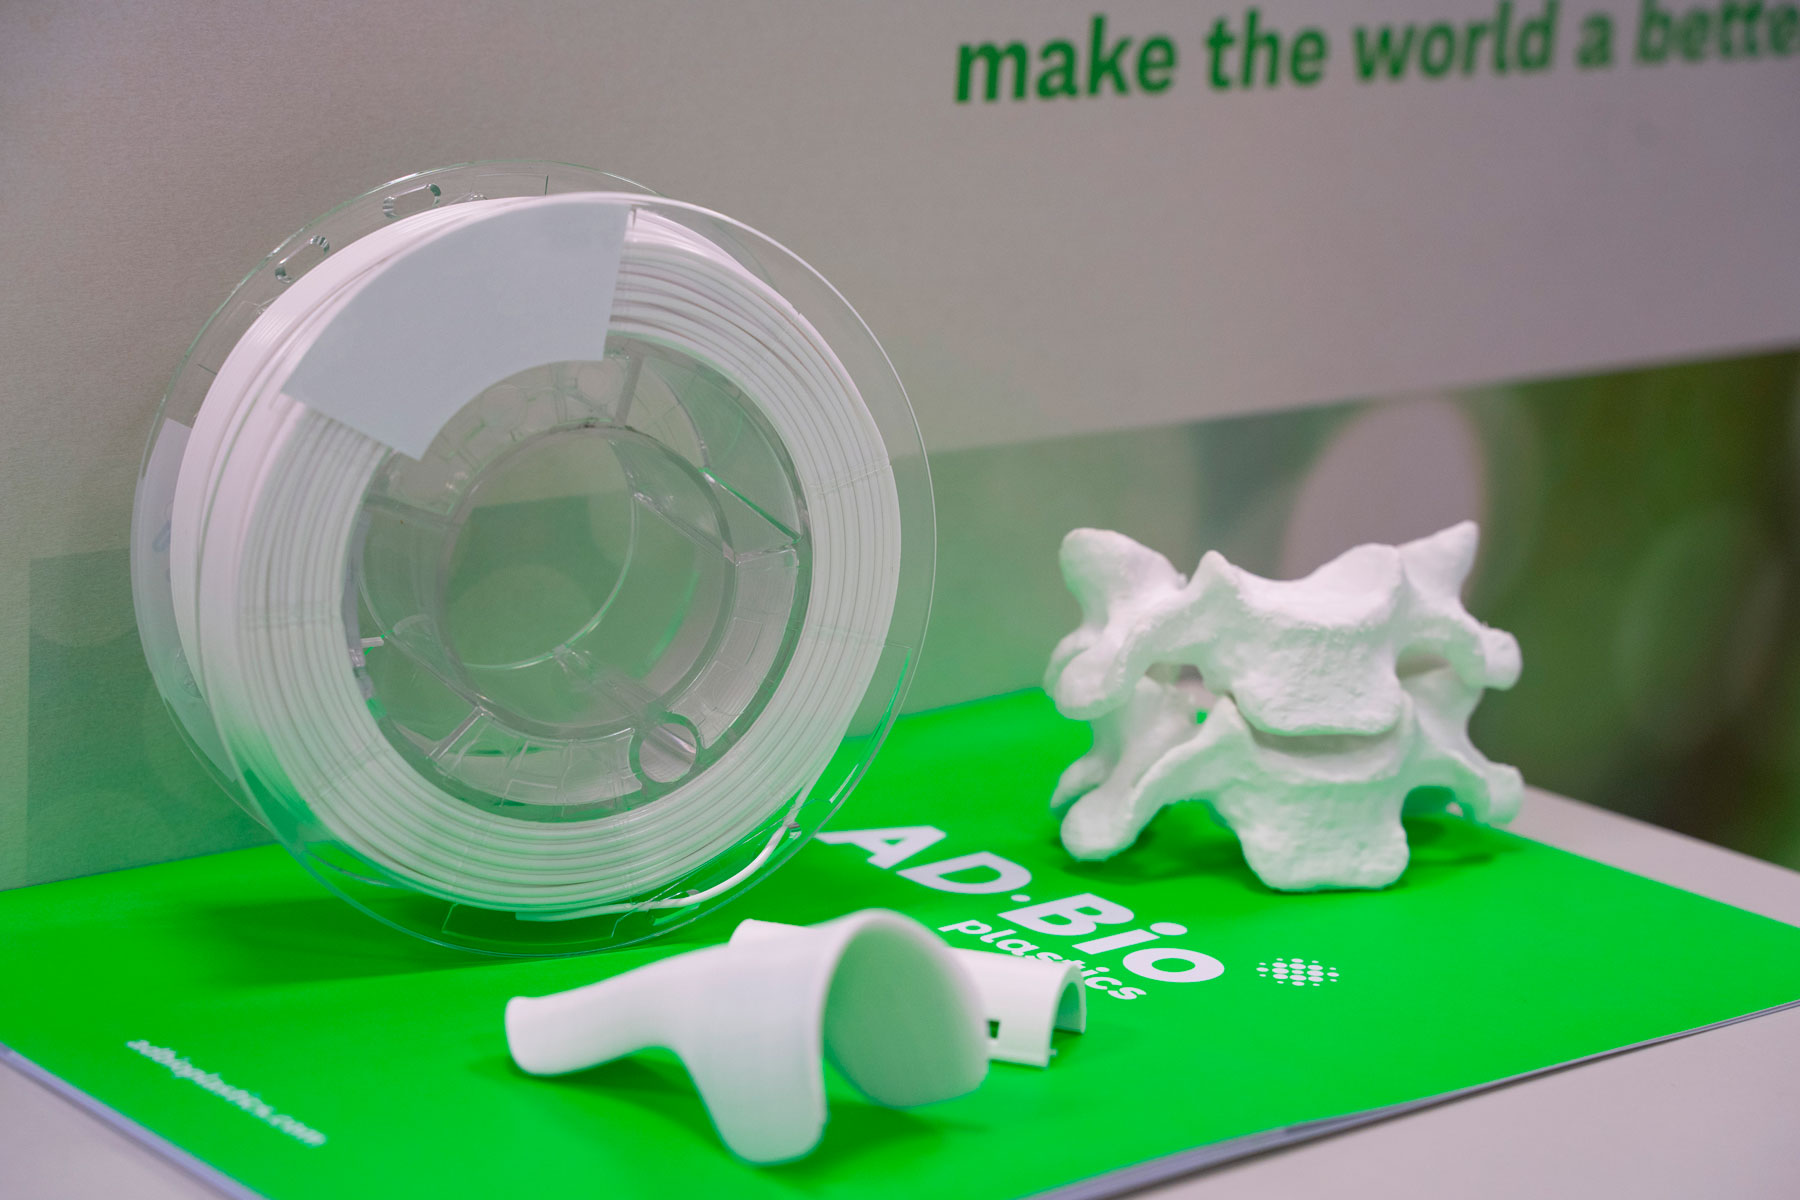 Productos fabricados por ADBioplastics mediante tecnología de impresión 3D